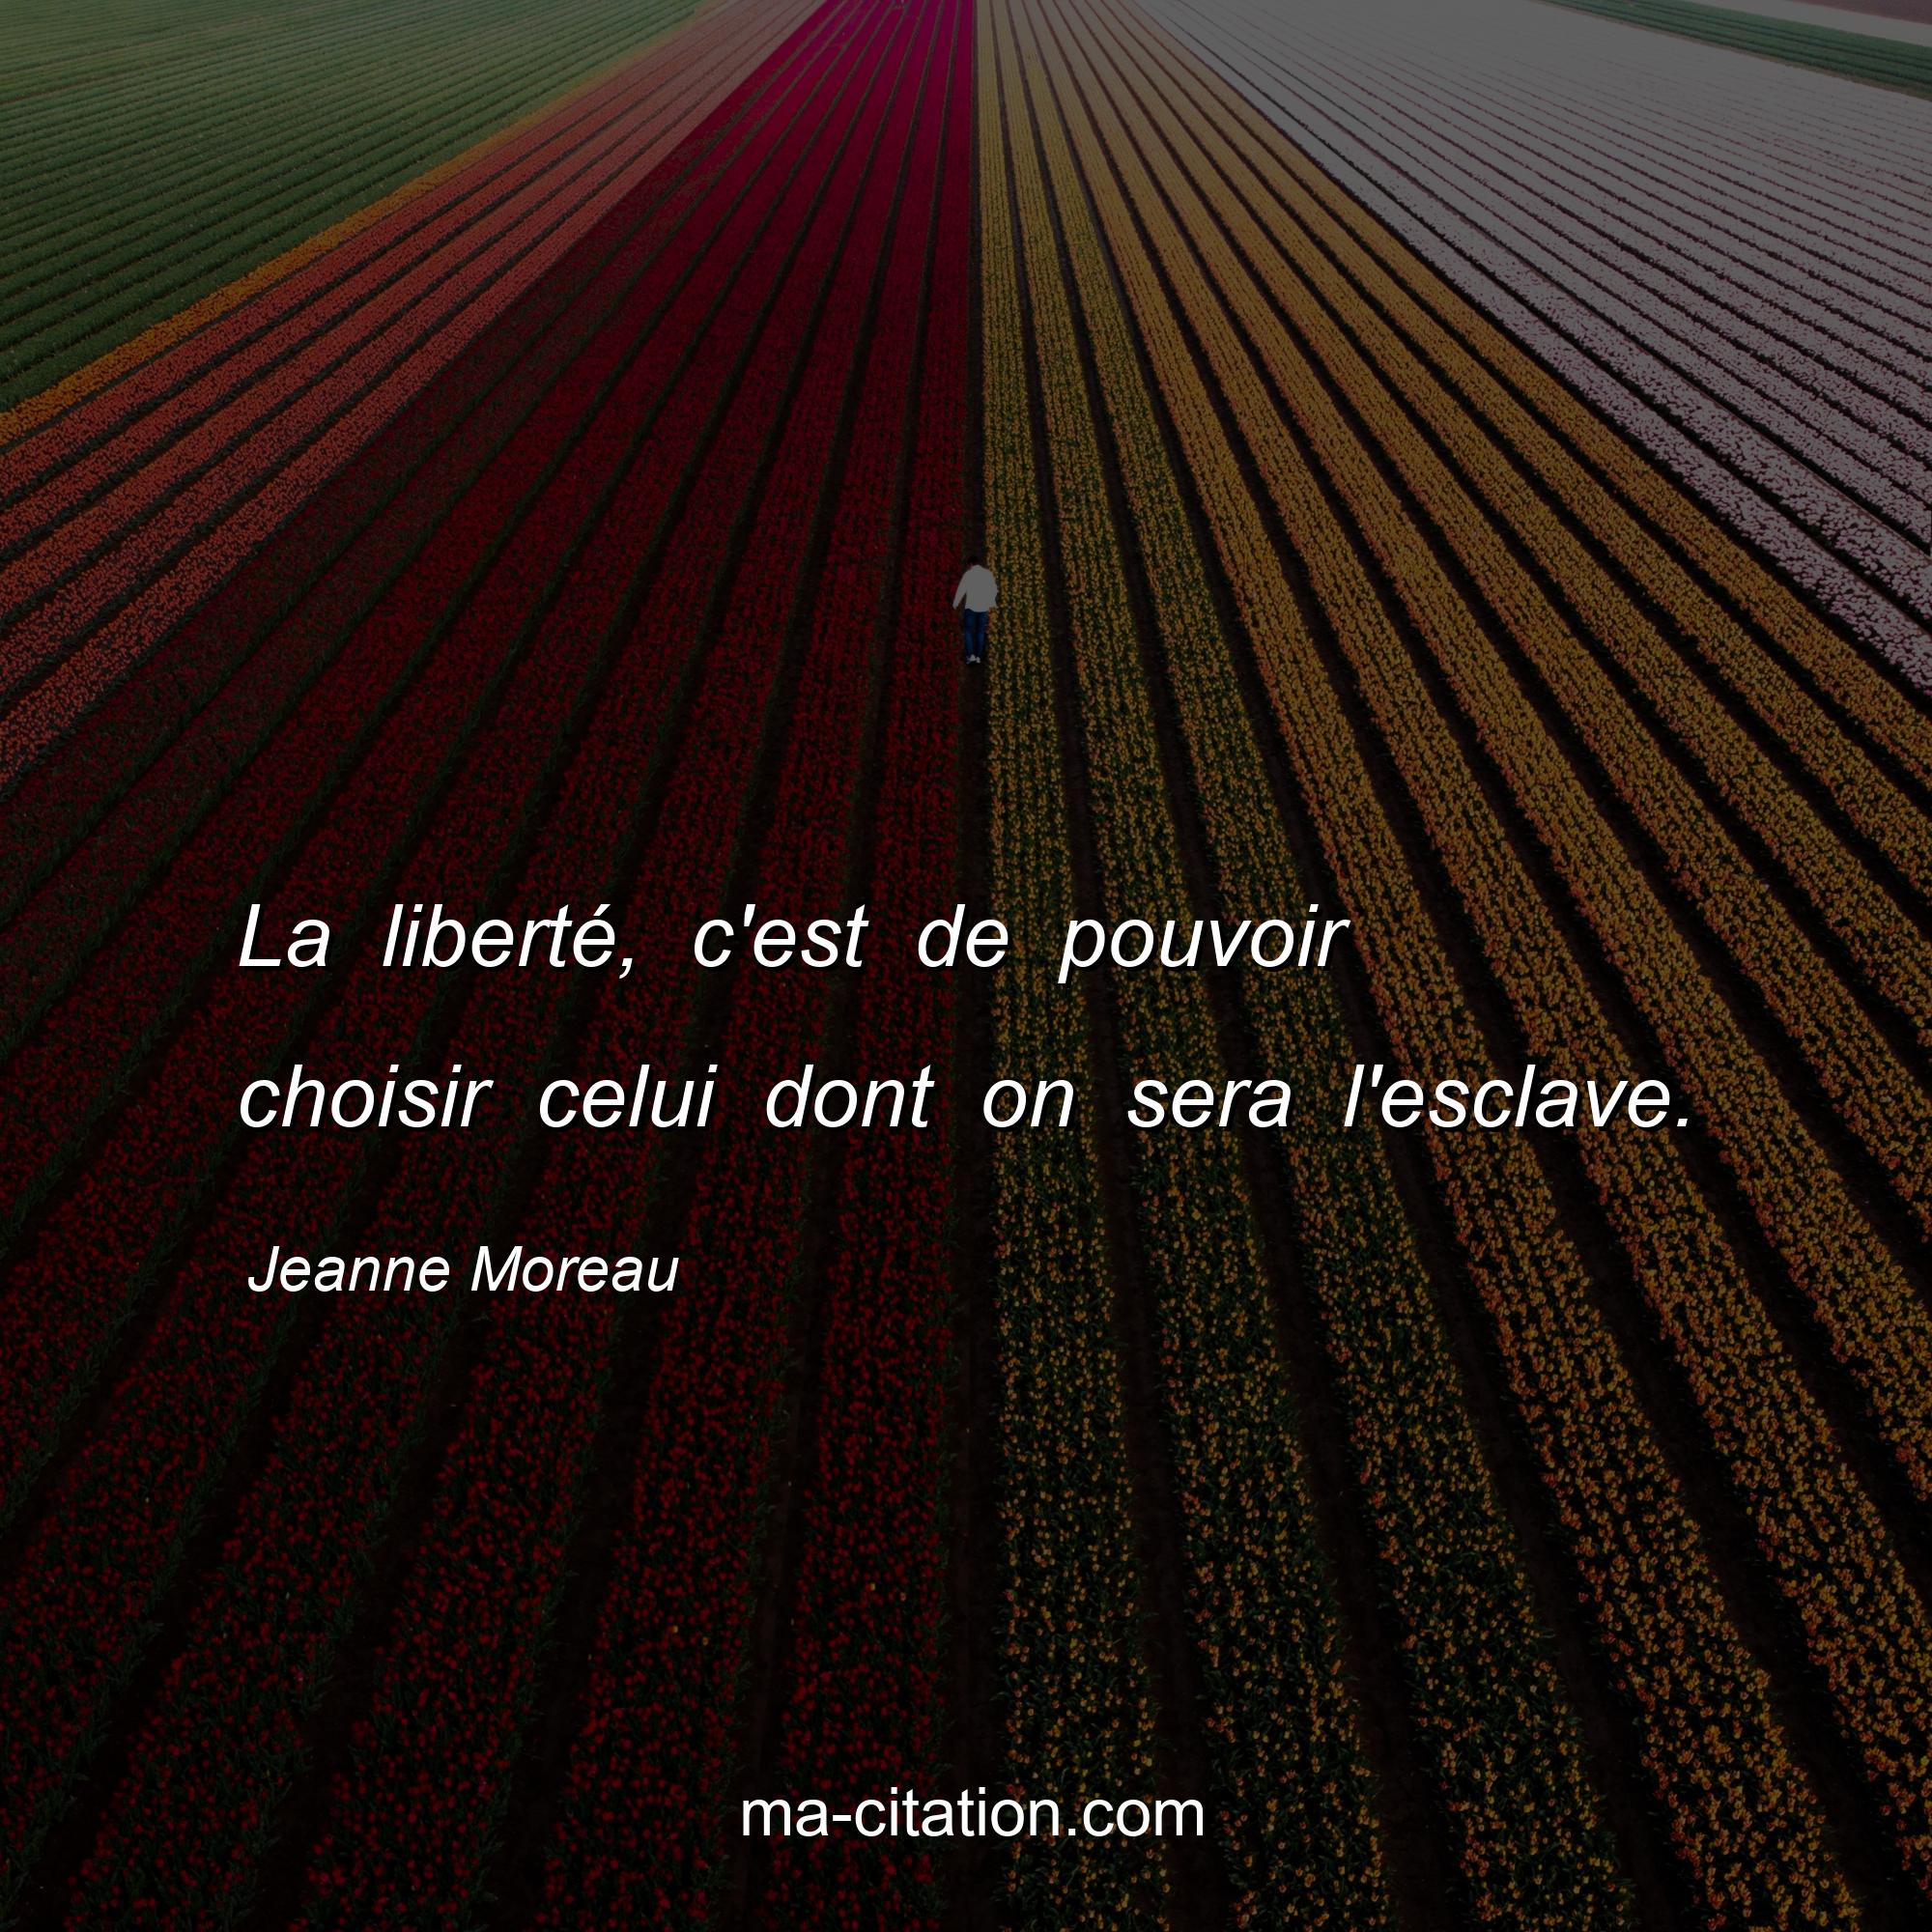 Jeanne Moreau : La liberté, c'est de pouvoir choisir celui dont on sera l'esclave.